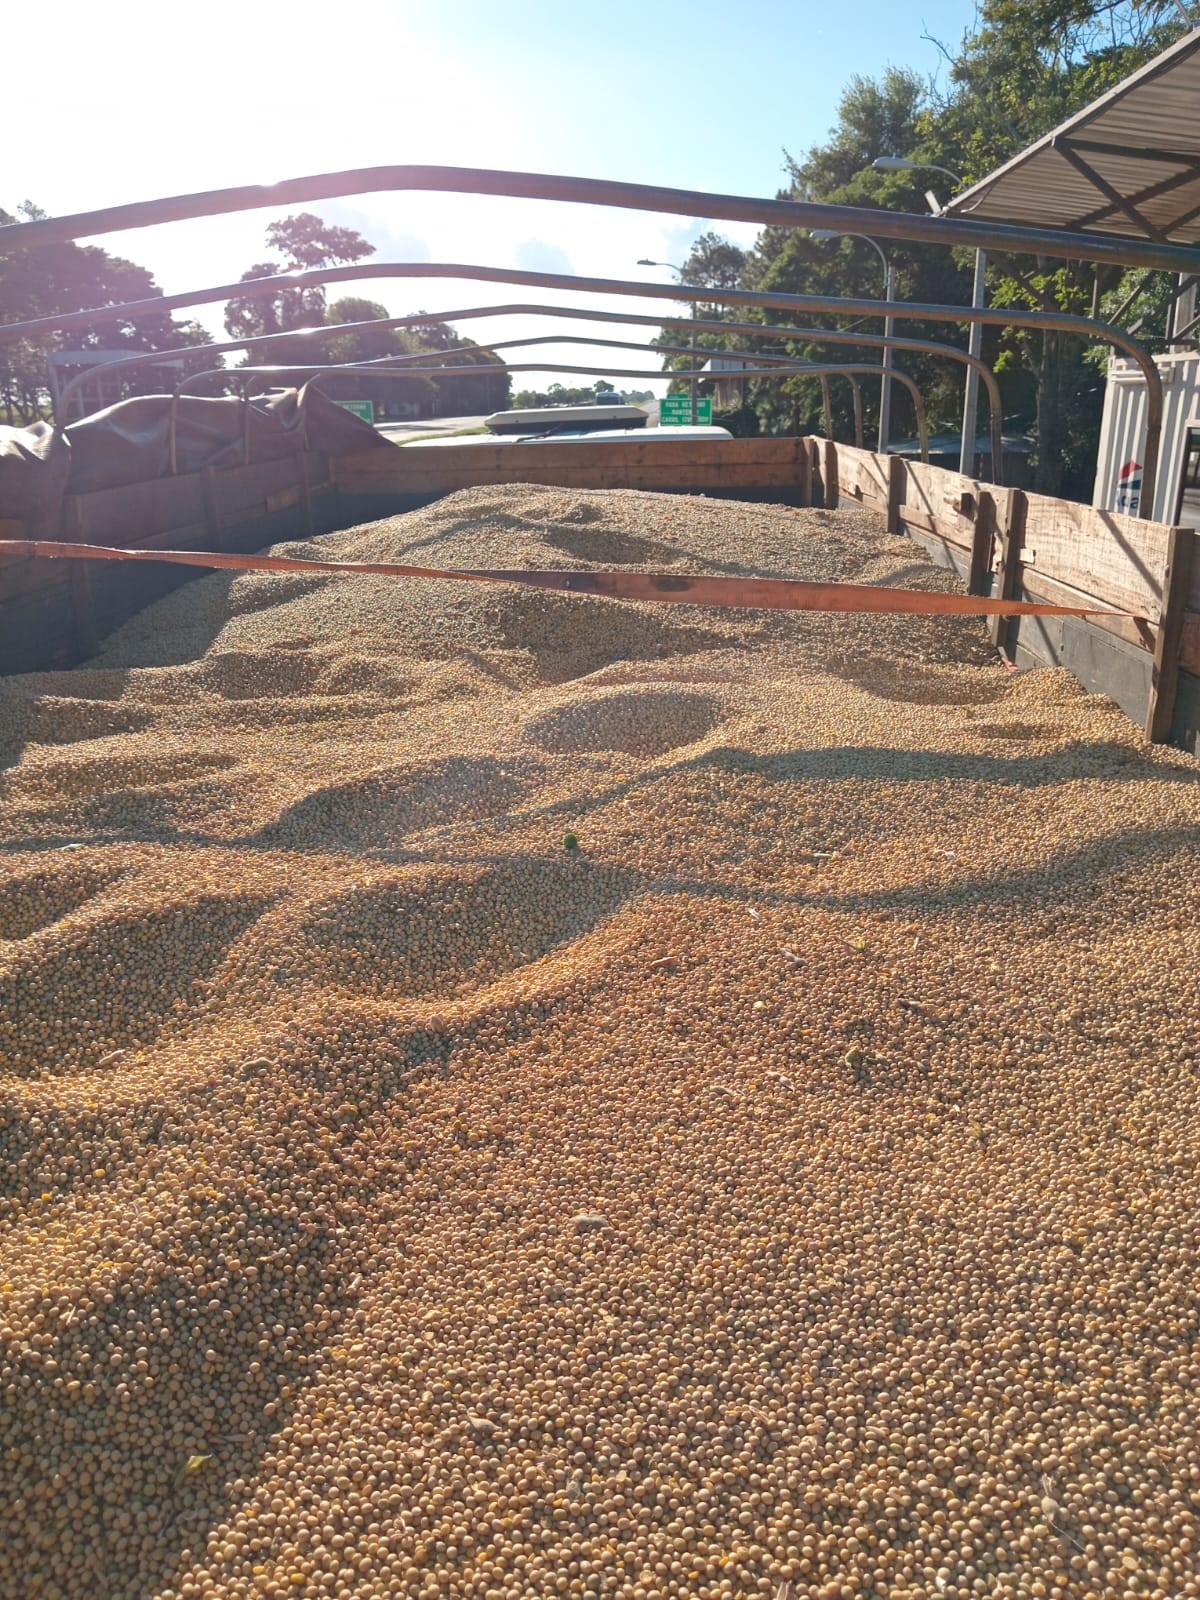 La DNIT incautó 10 toneladas de soja debido a no contar con la debida documentación respaldatoria